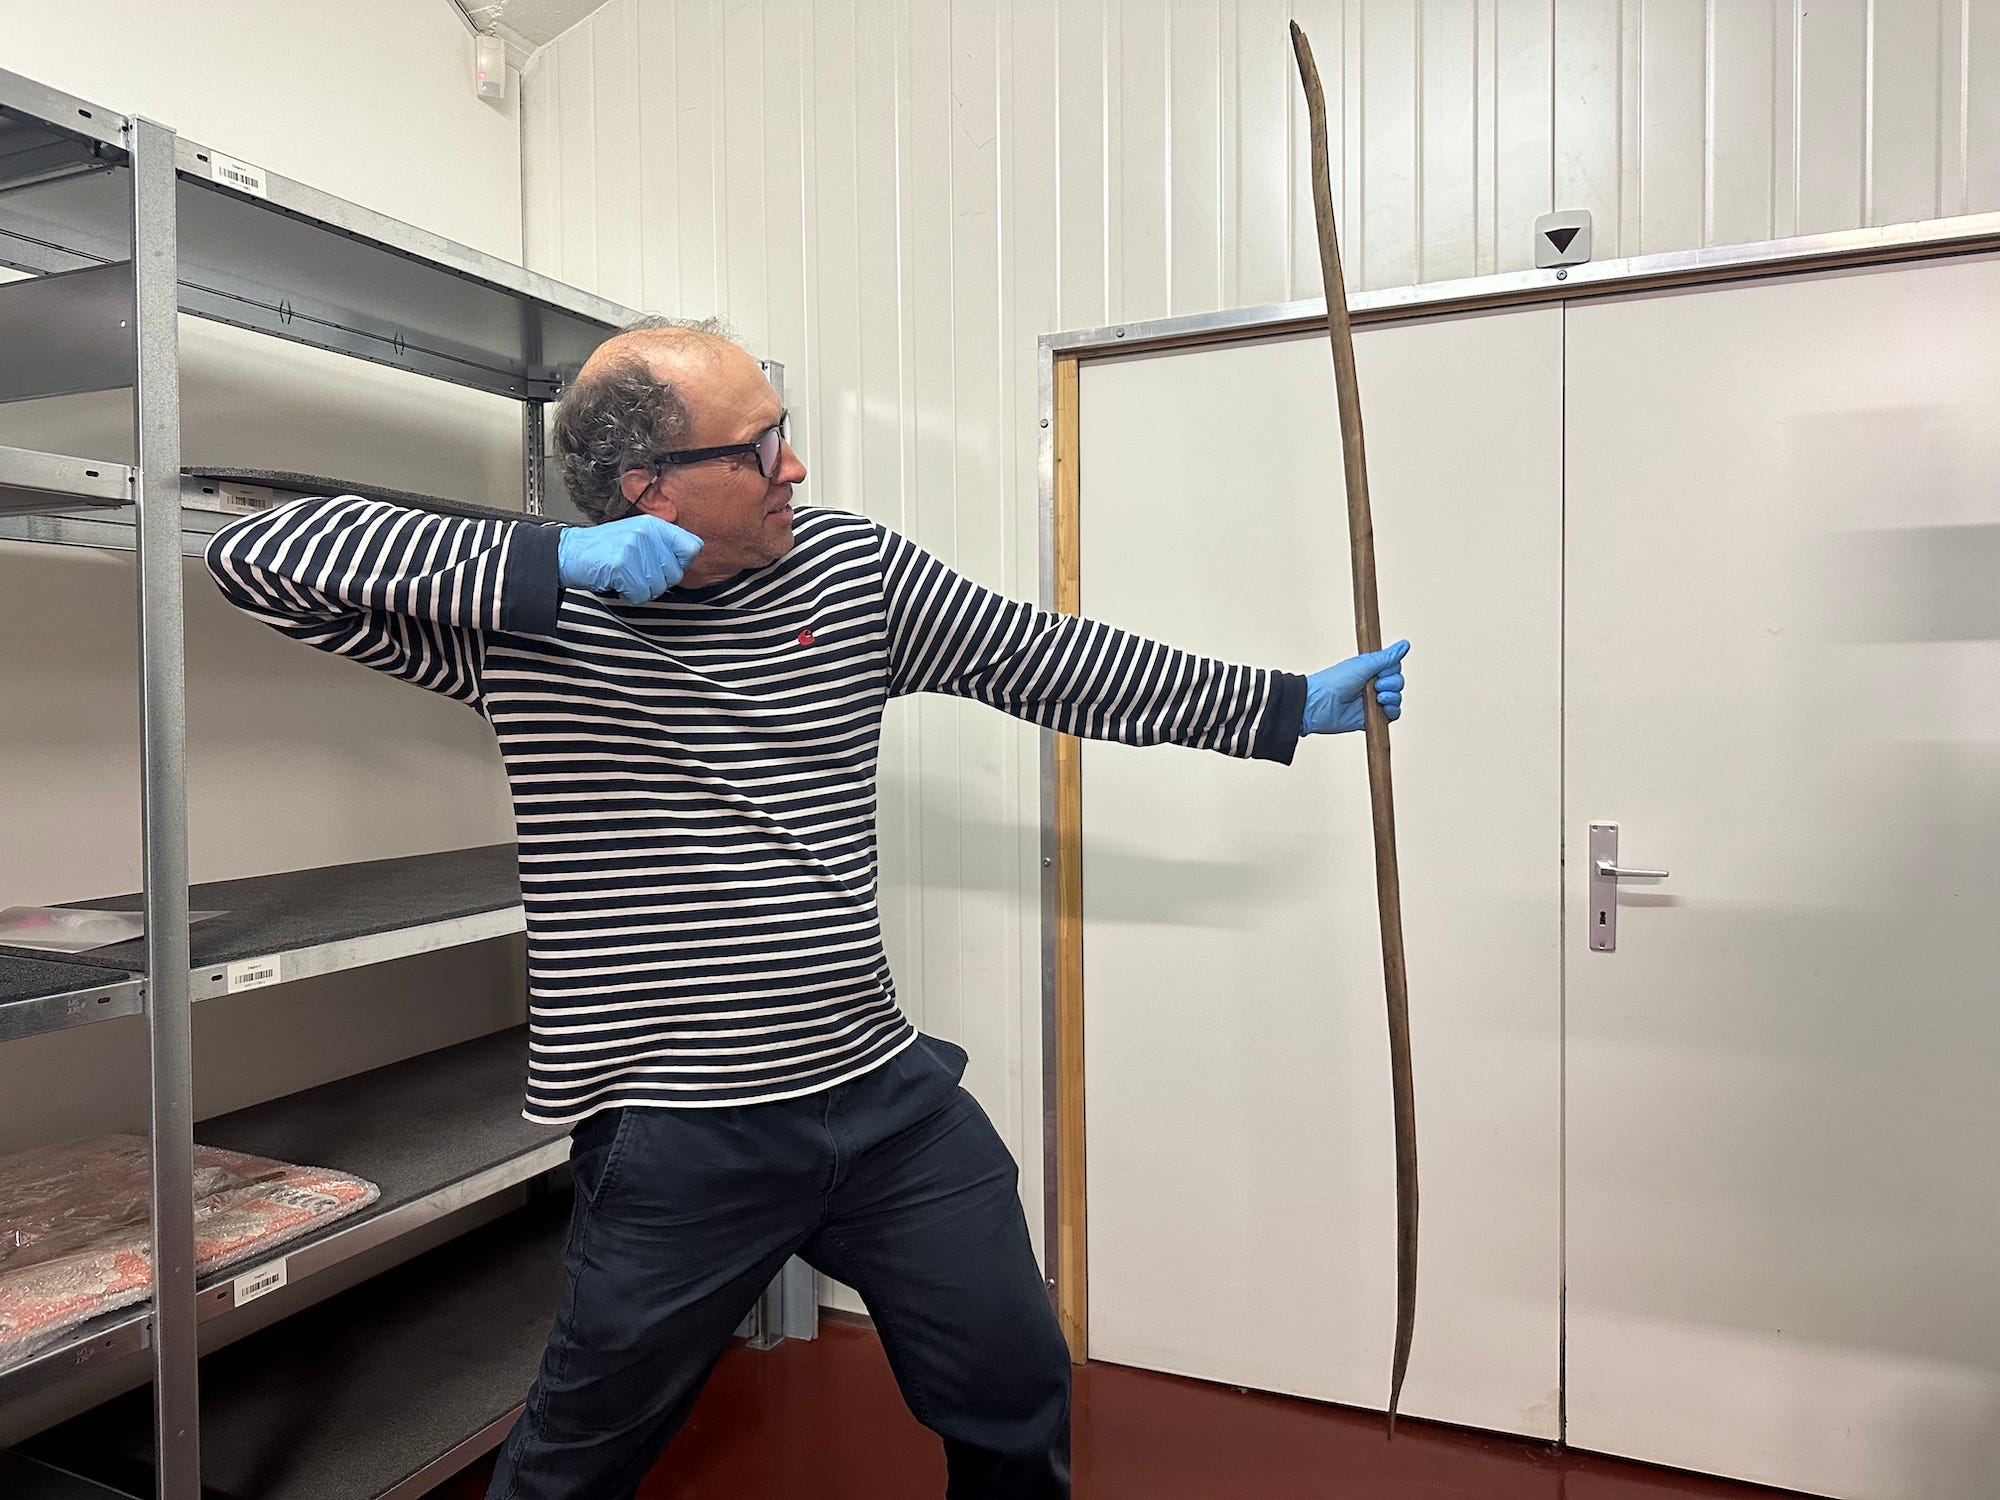 Der Archäologe im schwarz-weiß gestreiften Hemd und mit Handschuhen posiert mit einem riesigen Bogen aus Holz, den Arm nach hinten gezogen, als würde er einen Pfeil abschießen